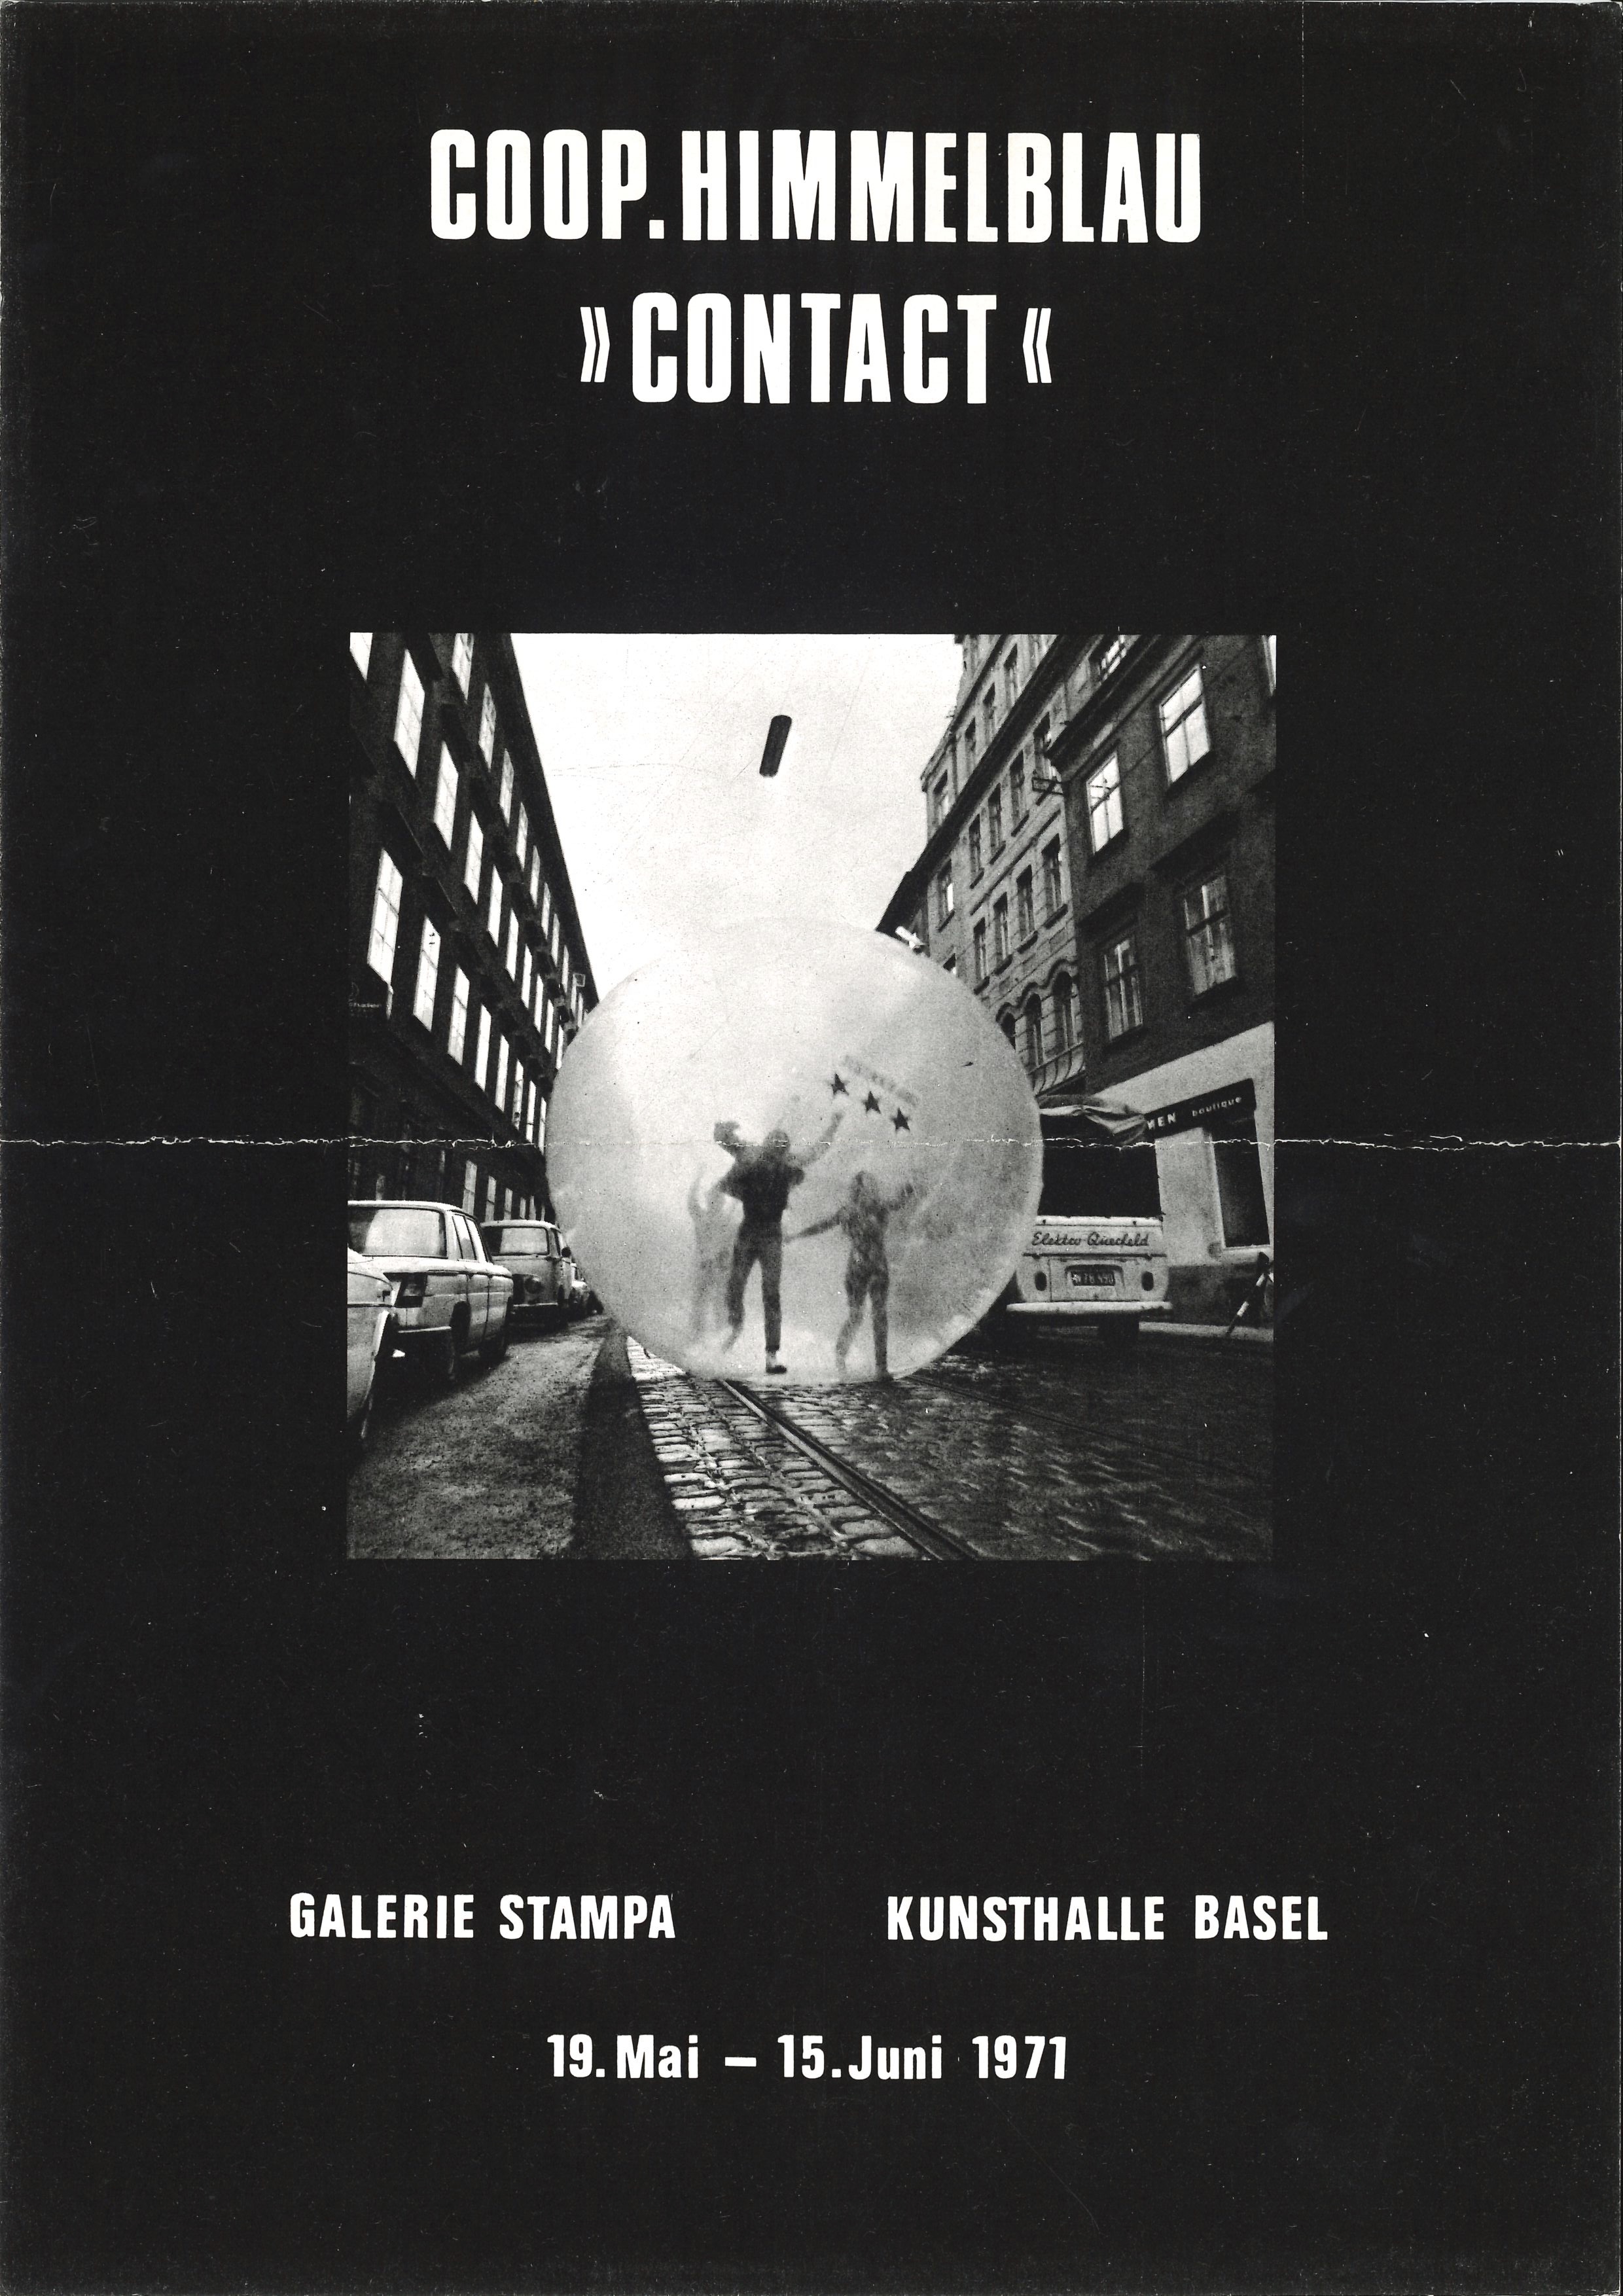 Galerie Stampa / Kunsthalle Basel, Coop Himmelb(l)au "Contact", 1971 (Announcement); Archiv der Avantgarden, Staatliche Kunstsammlungen Dresden